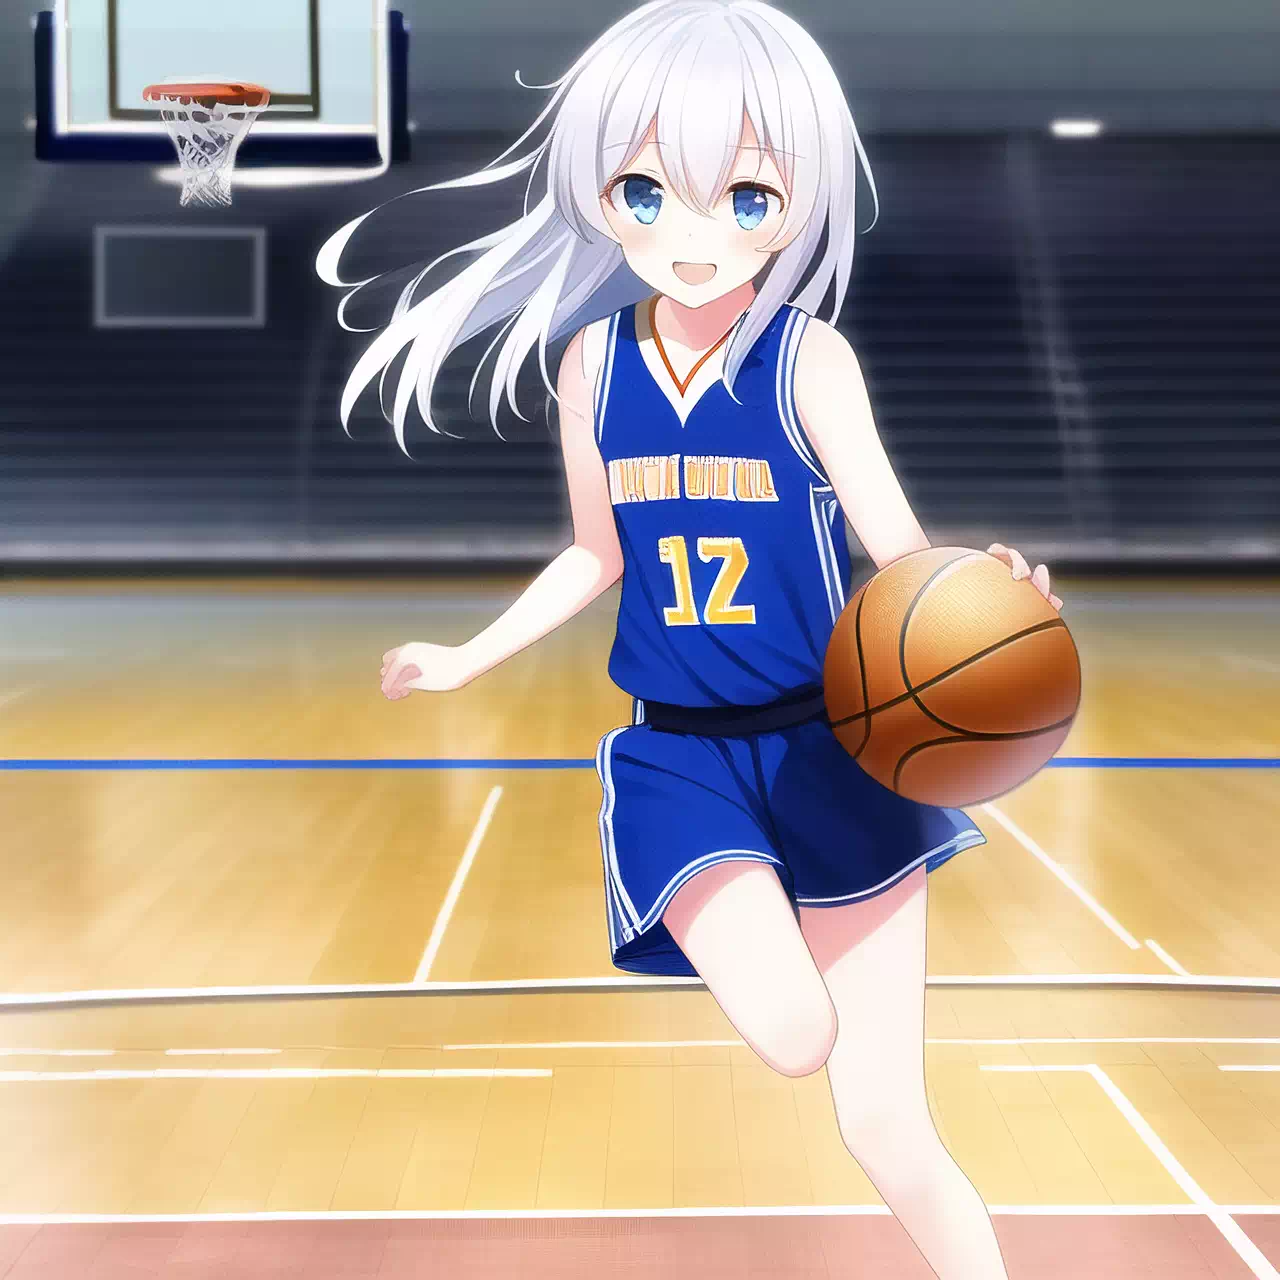 Hibiki plays basketball!